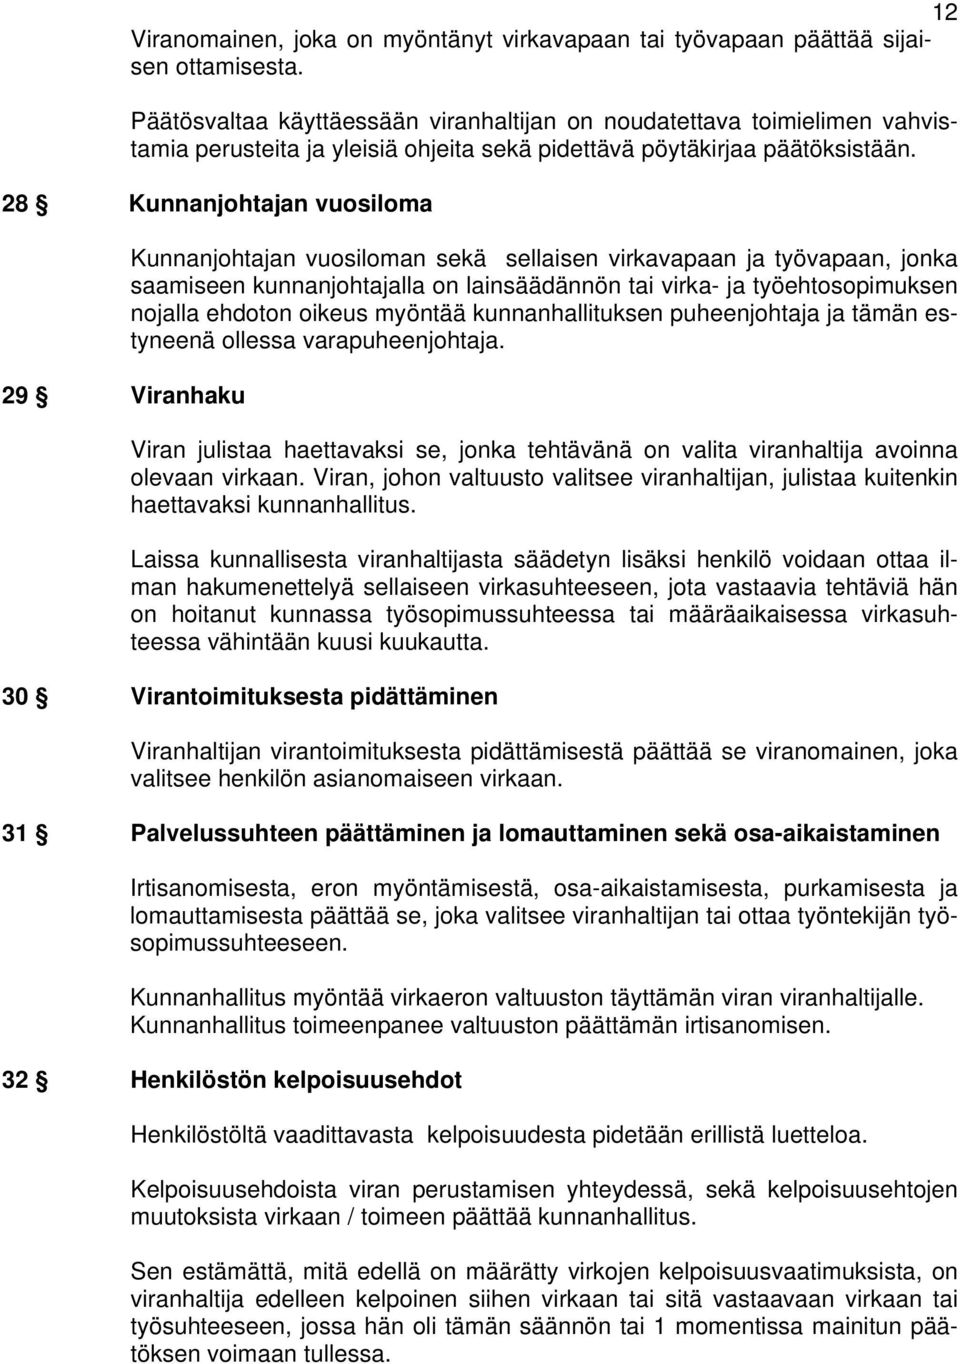 28 Kunnanjohtajan vuosiloma 29 Viranhaku Kunnanjohtajan vuosiloman sekä sellaisen virkavapaan ja työvapaan, jonka saamiseen kunnanjohtajalla on lainsäädännön tai virka- ja työehtosopimuksen nojalla